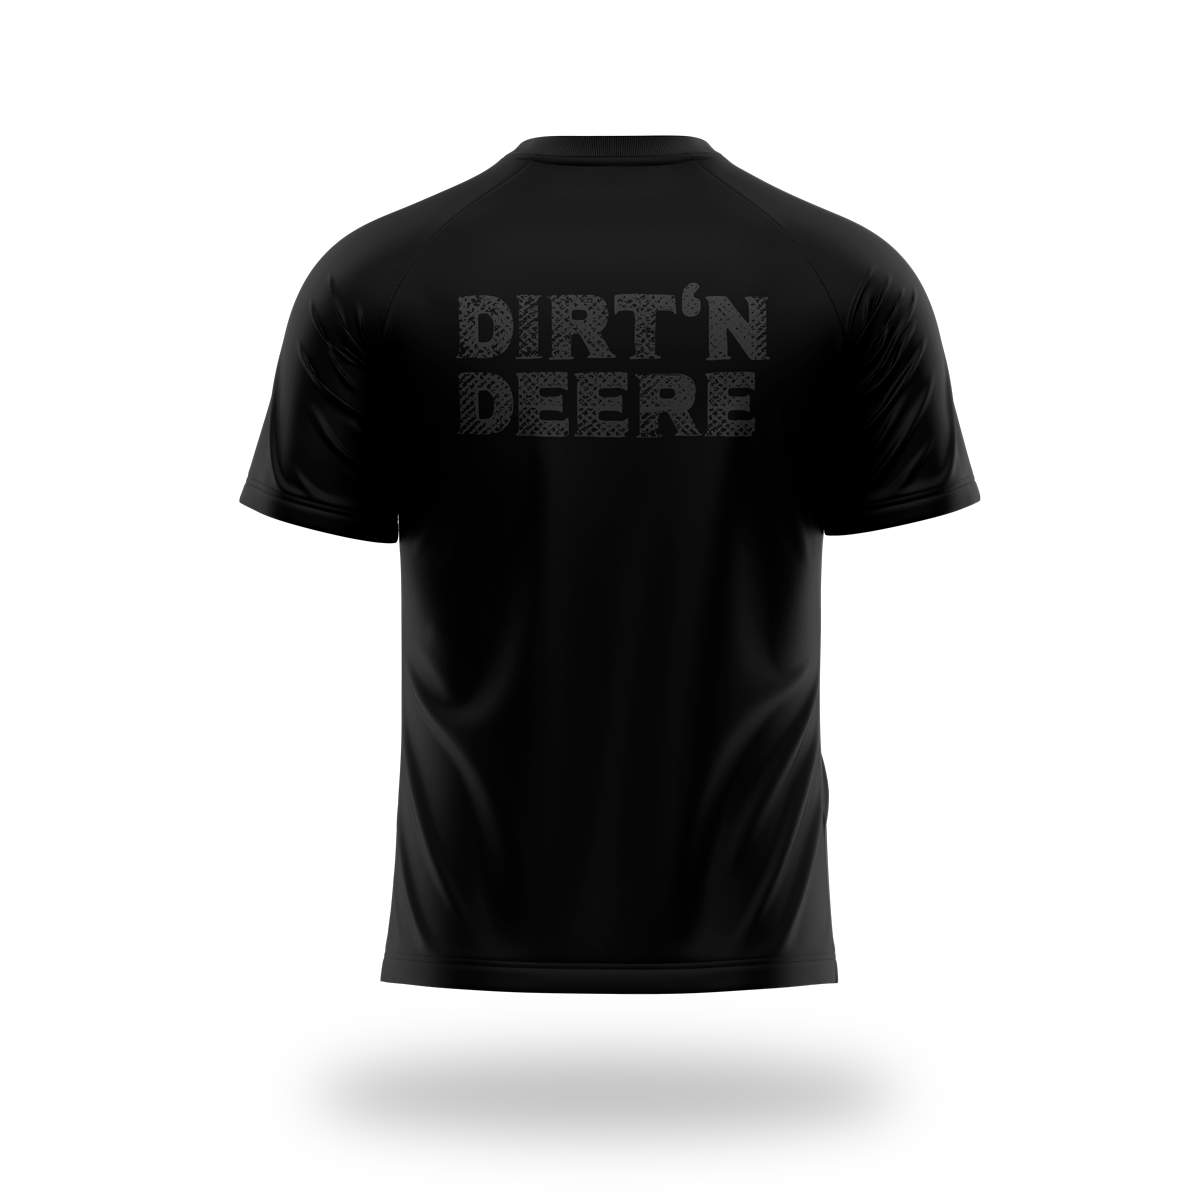 Dirt'n Deere - Stealth T-shirt - Working Class Apparel